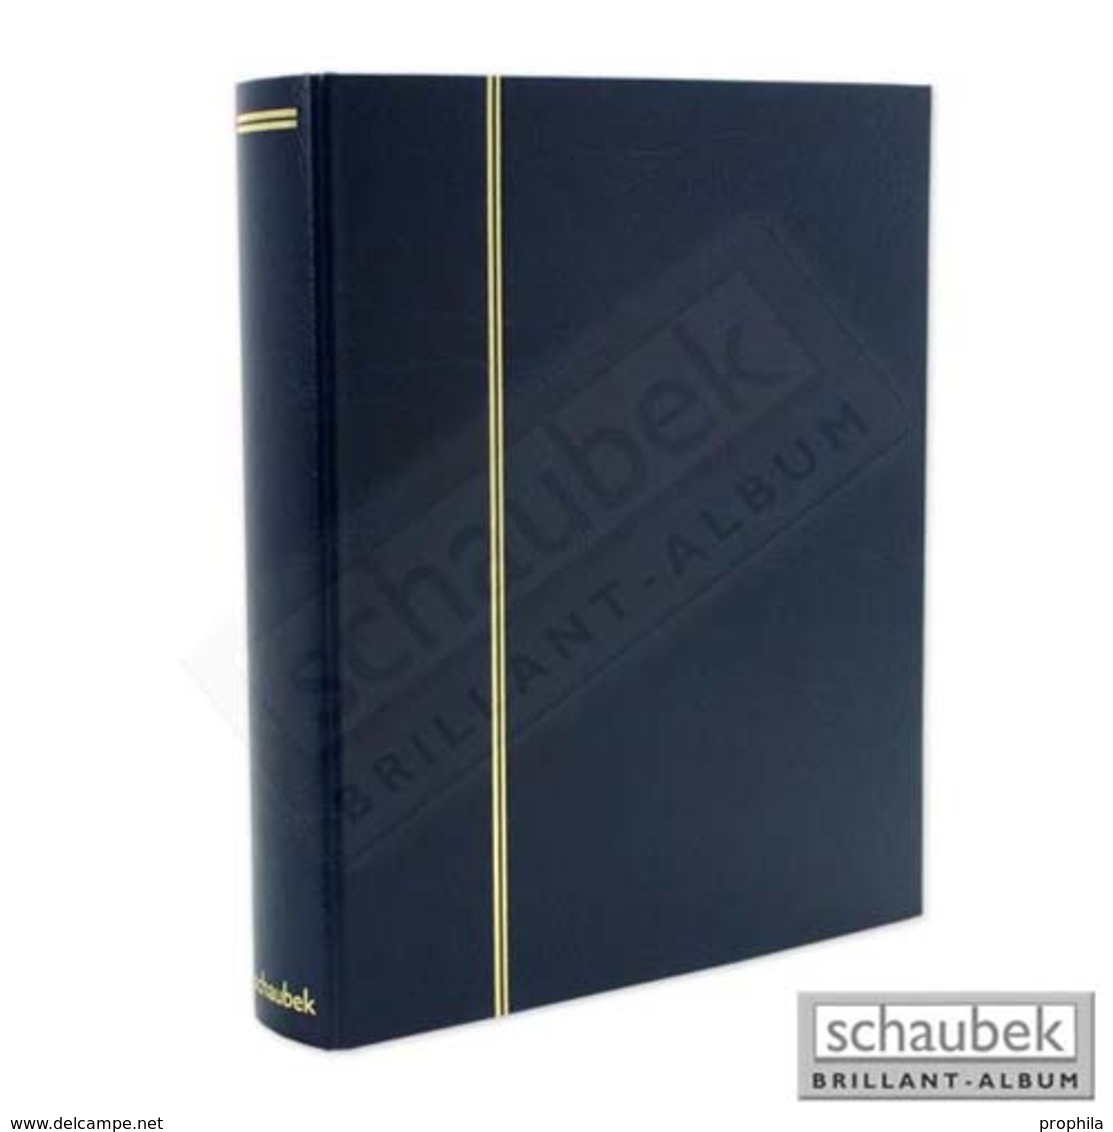 Schaubek Rb-1113 Universal-Folienblattalbum Attaché Für ETB Mit 20 Blatt Fo-111 Für Formate Bis DIN A4 Blau - Grand Format, Fond Noir